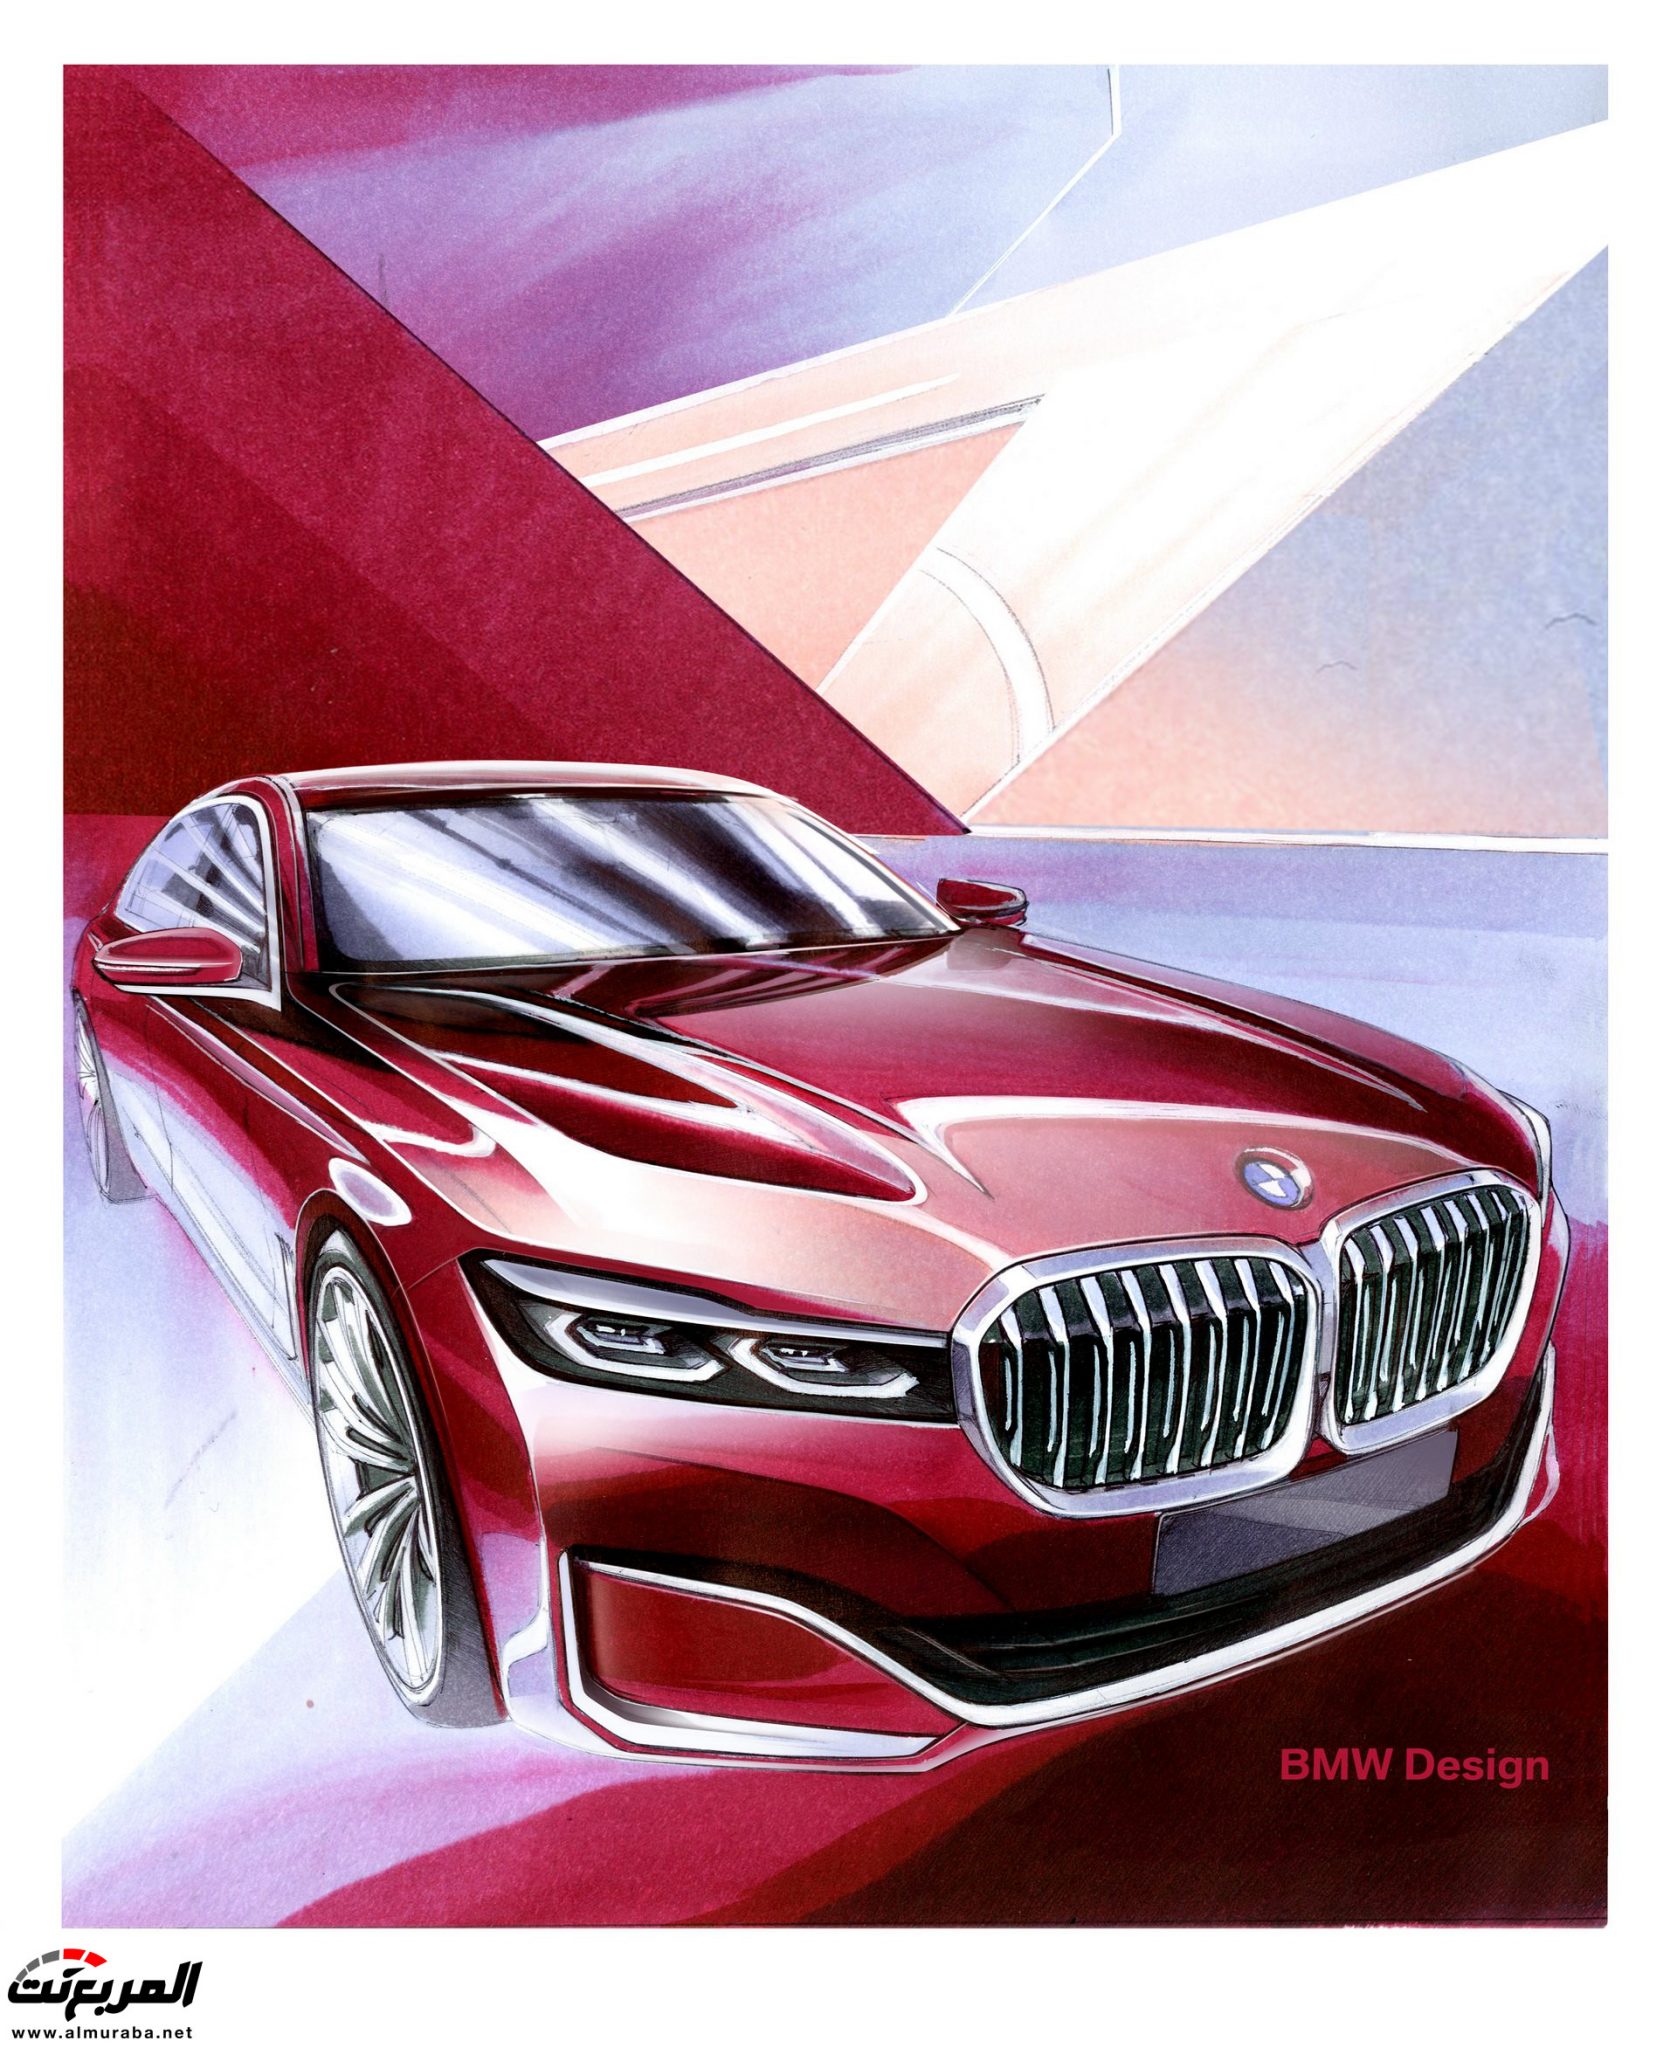 بي ام دبليو الفئة السابعة 2020 المحدثة تكشف نفسها رسمياً "صور ومواصفات" BMW 7 Series 216